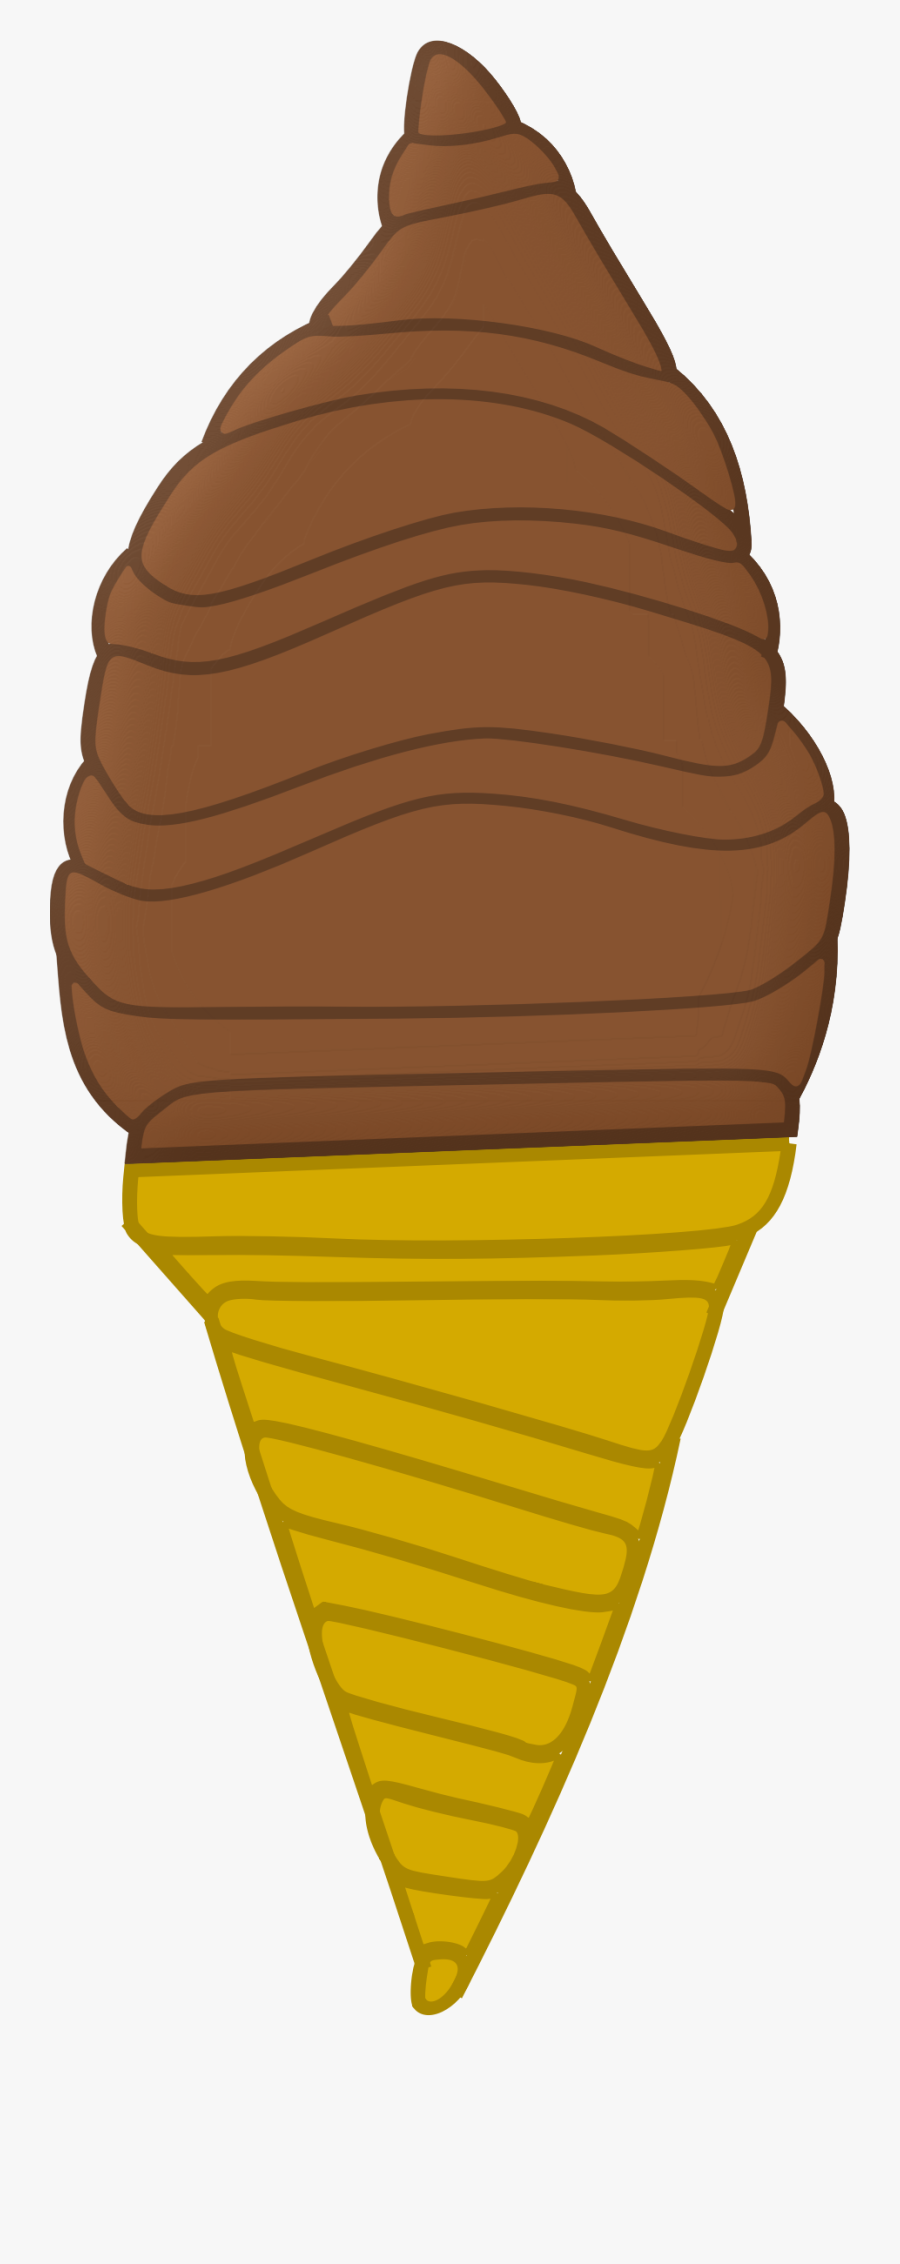 Ice Cream Cone Big - Ice Cream Cone, Transparent Clipart